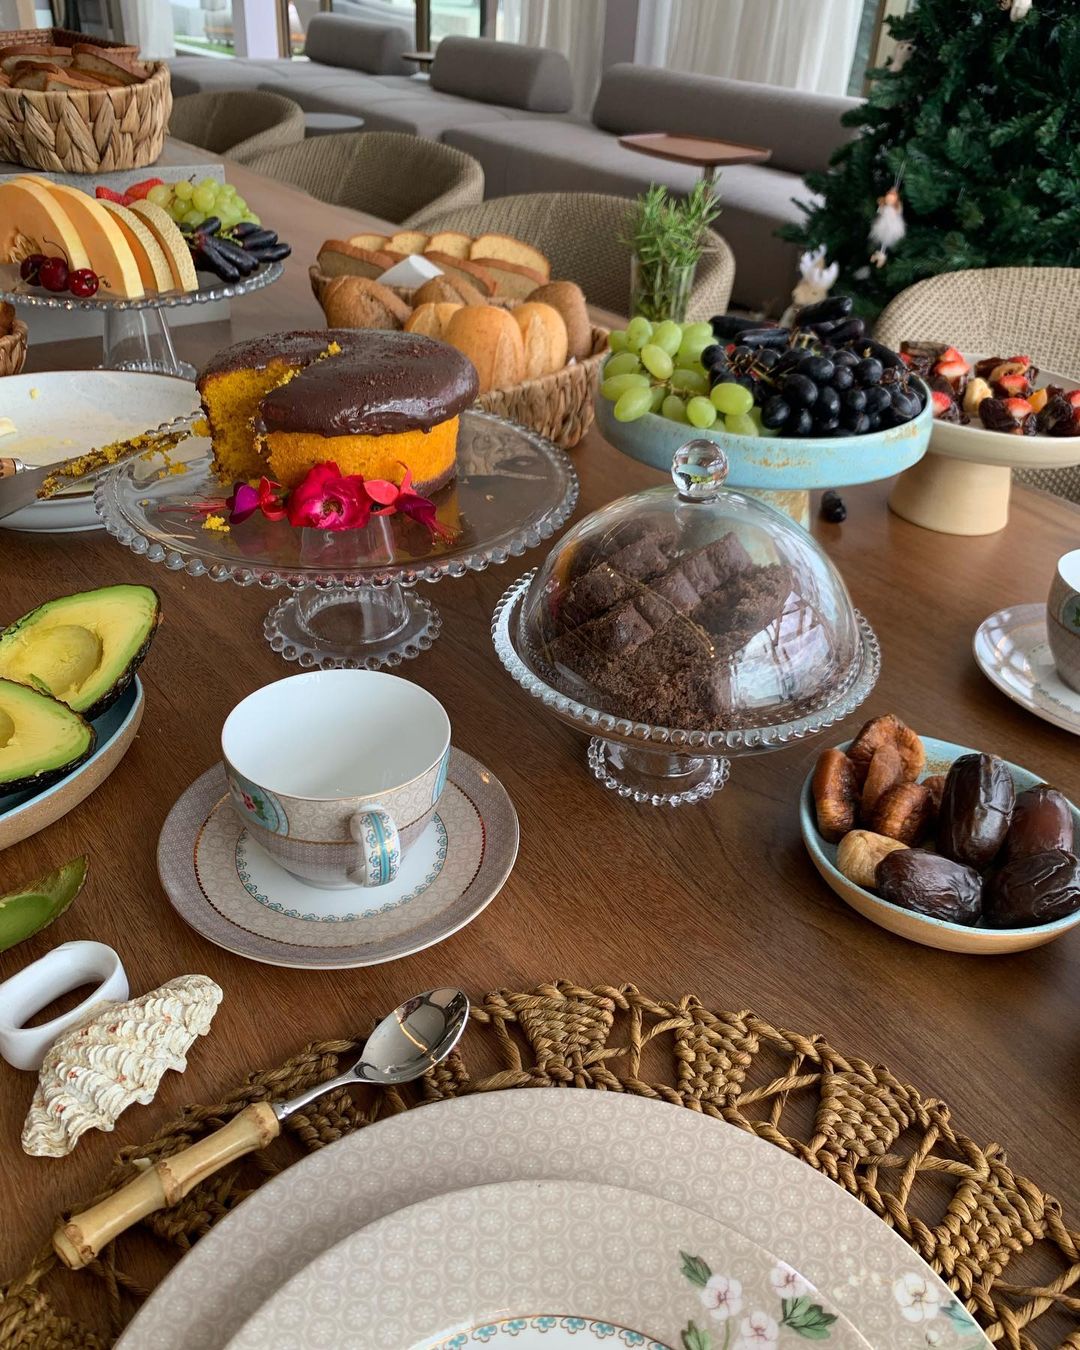 A supermodel mostra a mesa de café da manhã no Brasil Reprodução/Instagram 18.12.2022